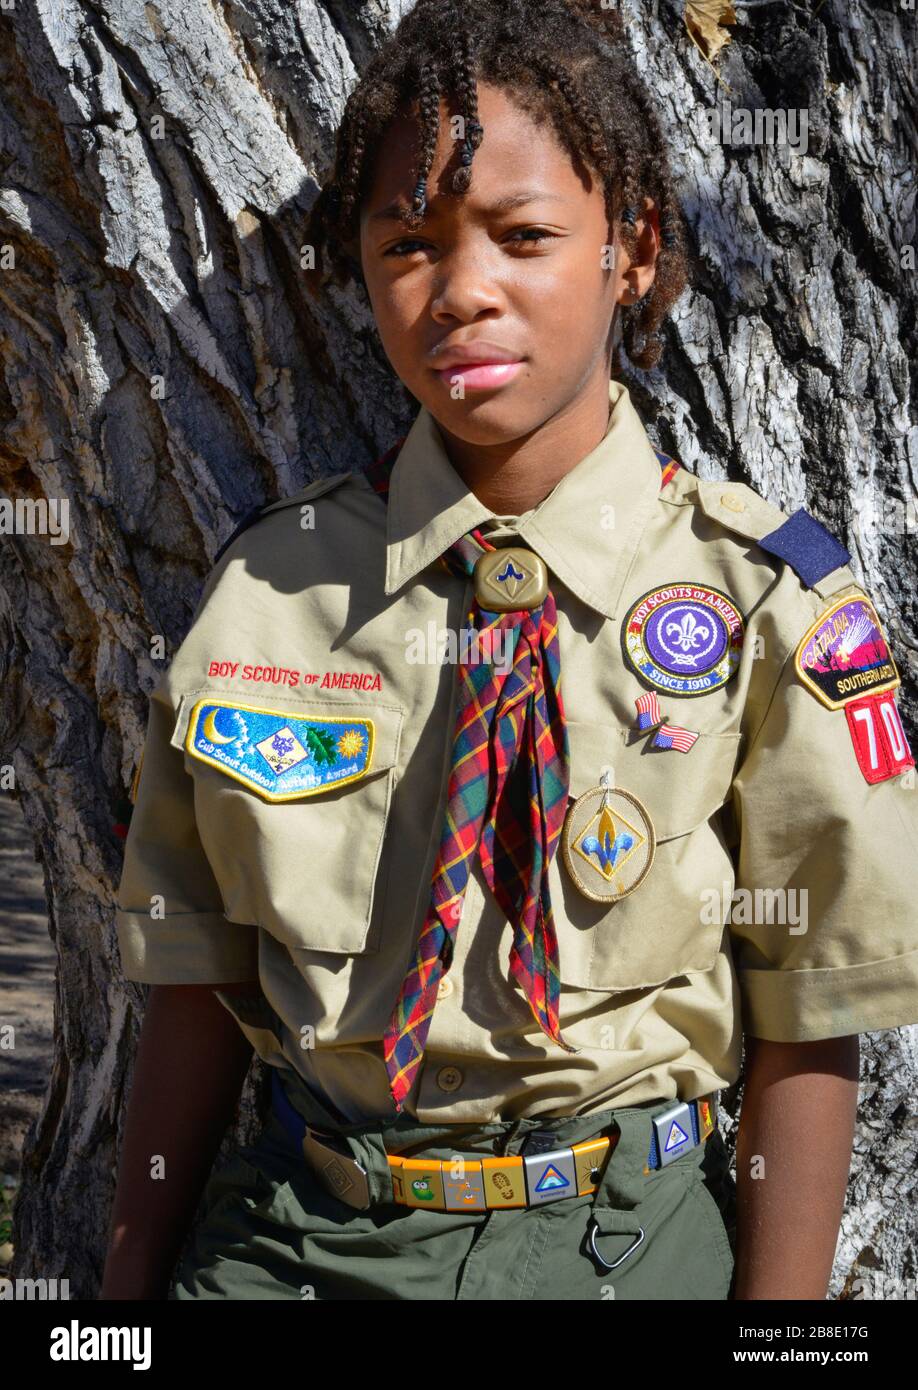 Süßer junger afroamerikanischer Junge posiert gegen Baum, der seine Jungen Scouts of America Uniform in Tucson, AZ, USA trägt Stockfoto